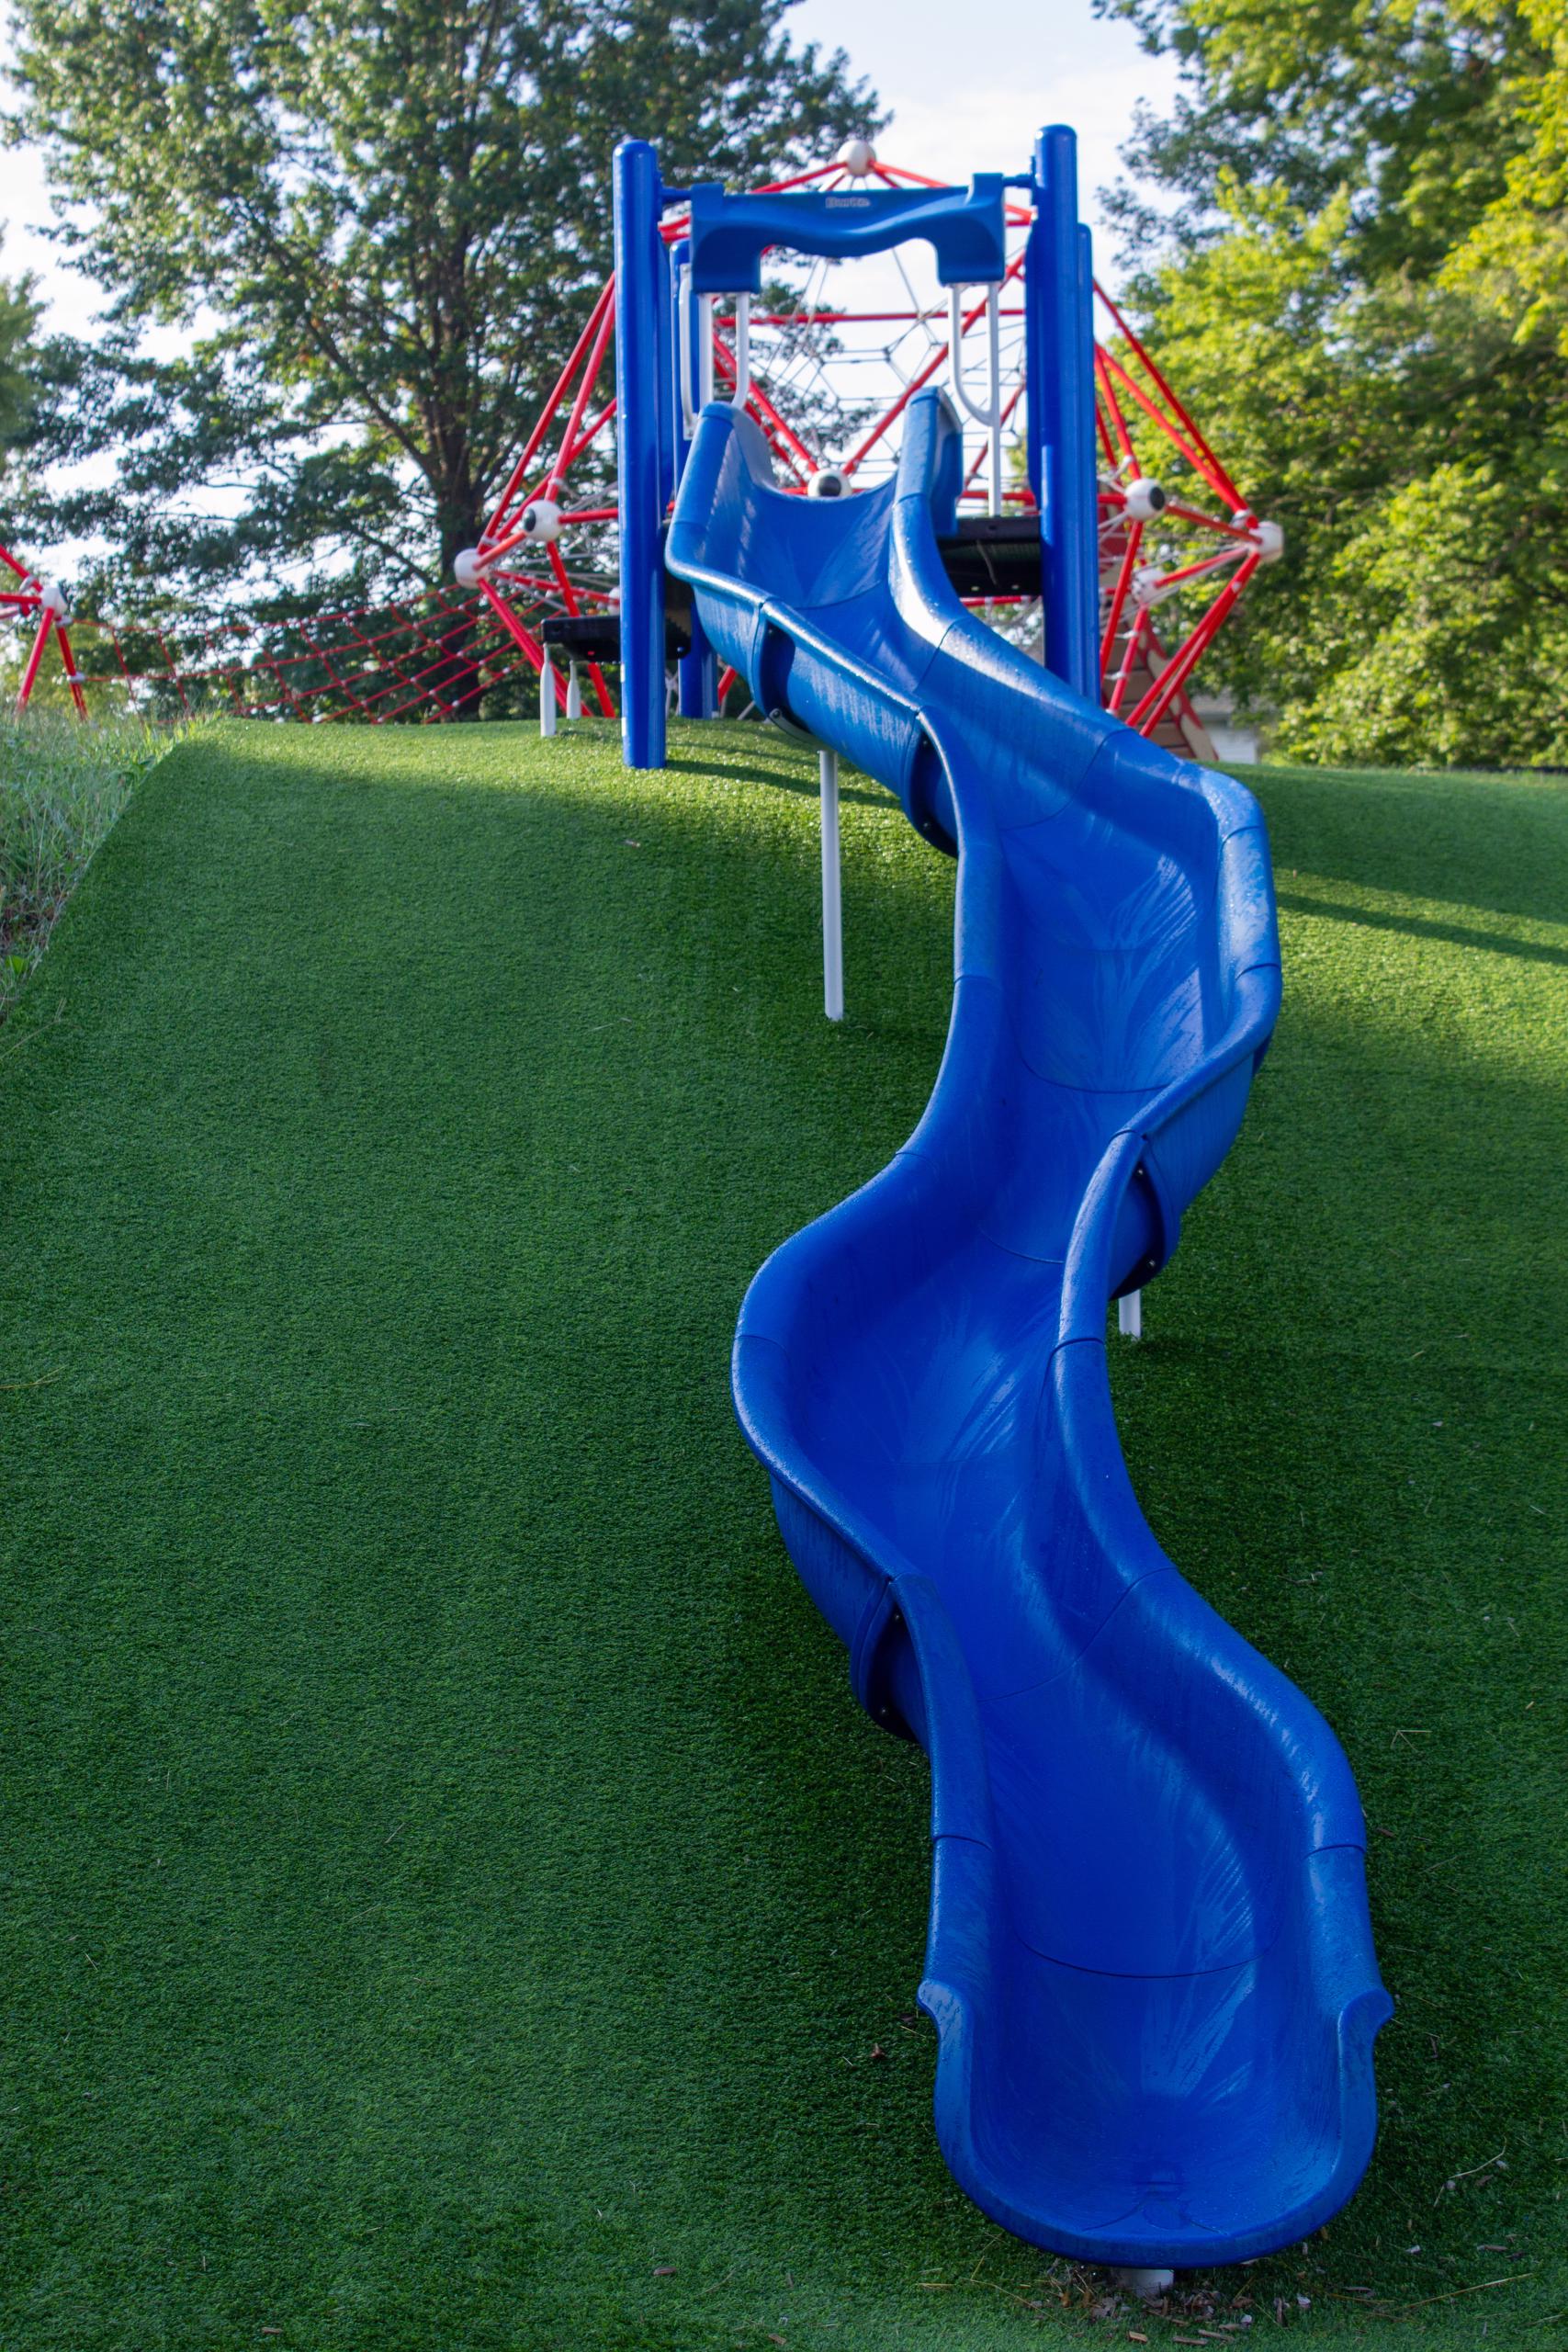 Embankment Slide